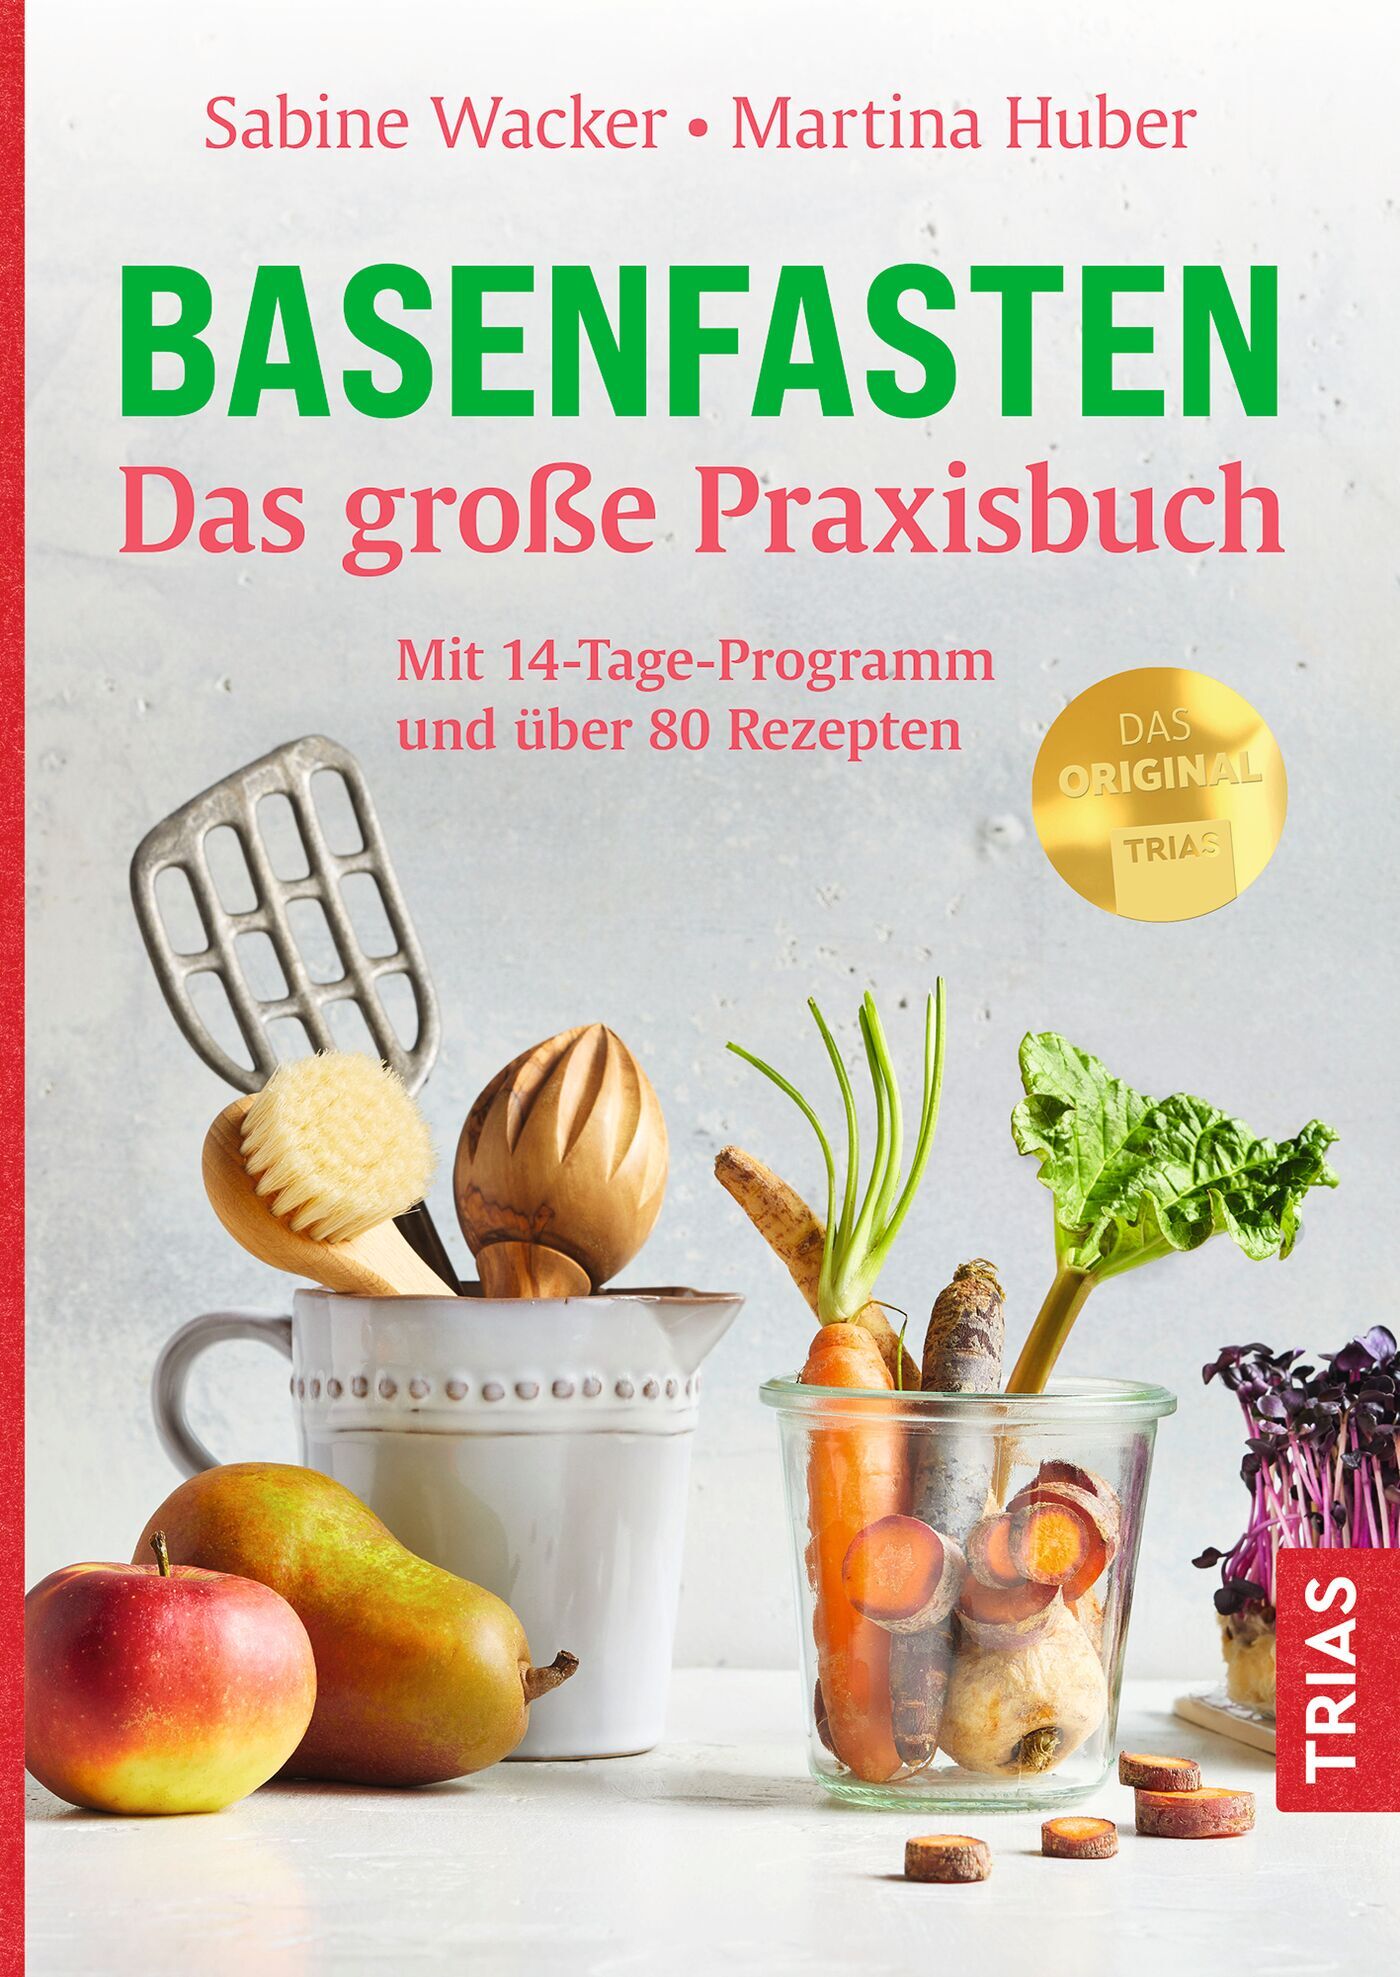 Basenfasten - Das große Praxisbuch, 9783432116907